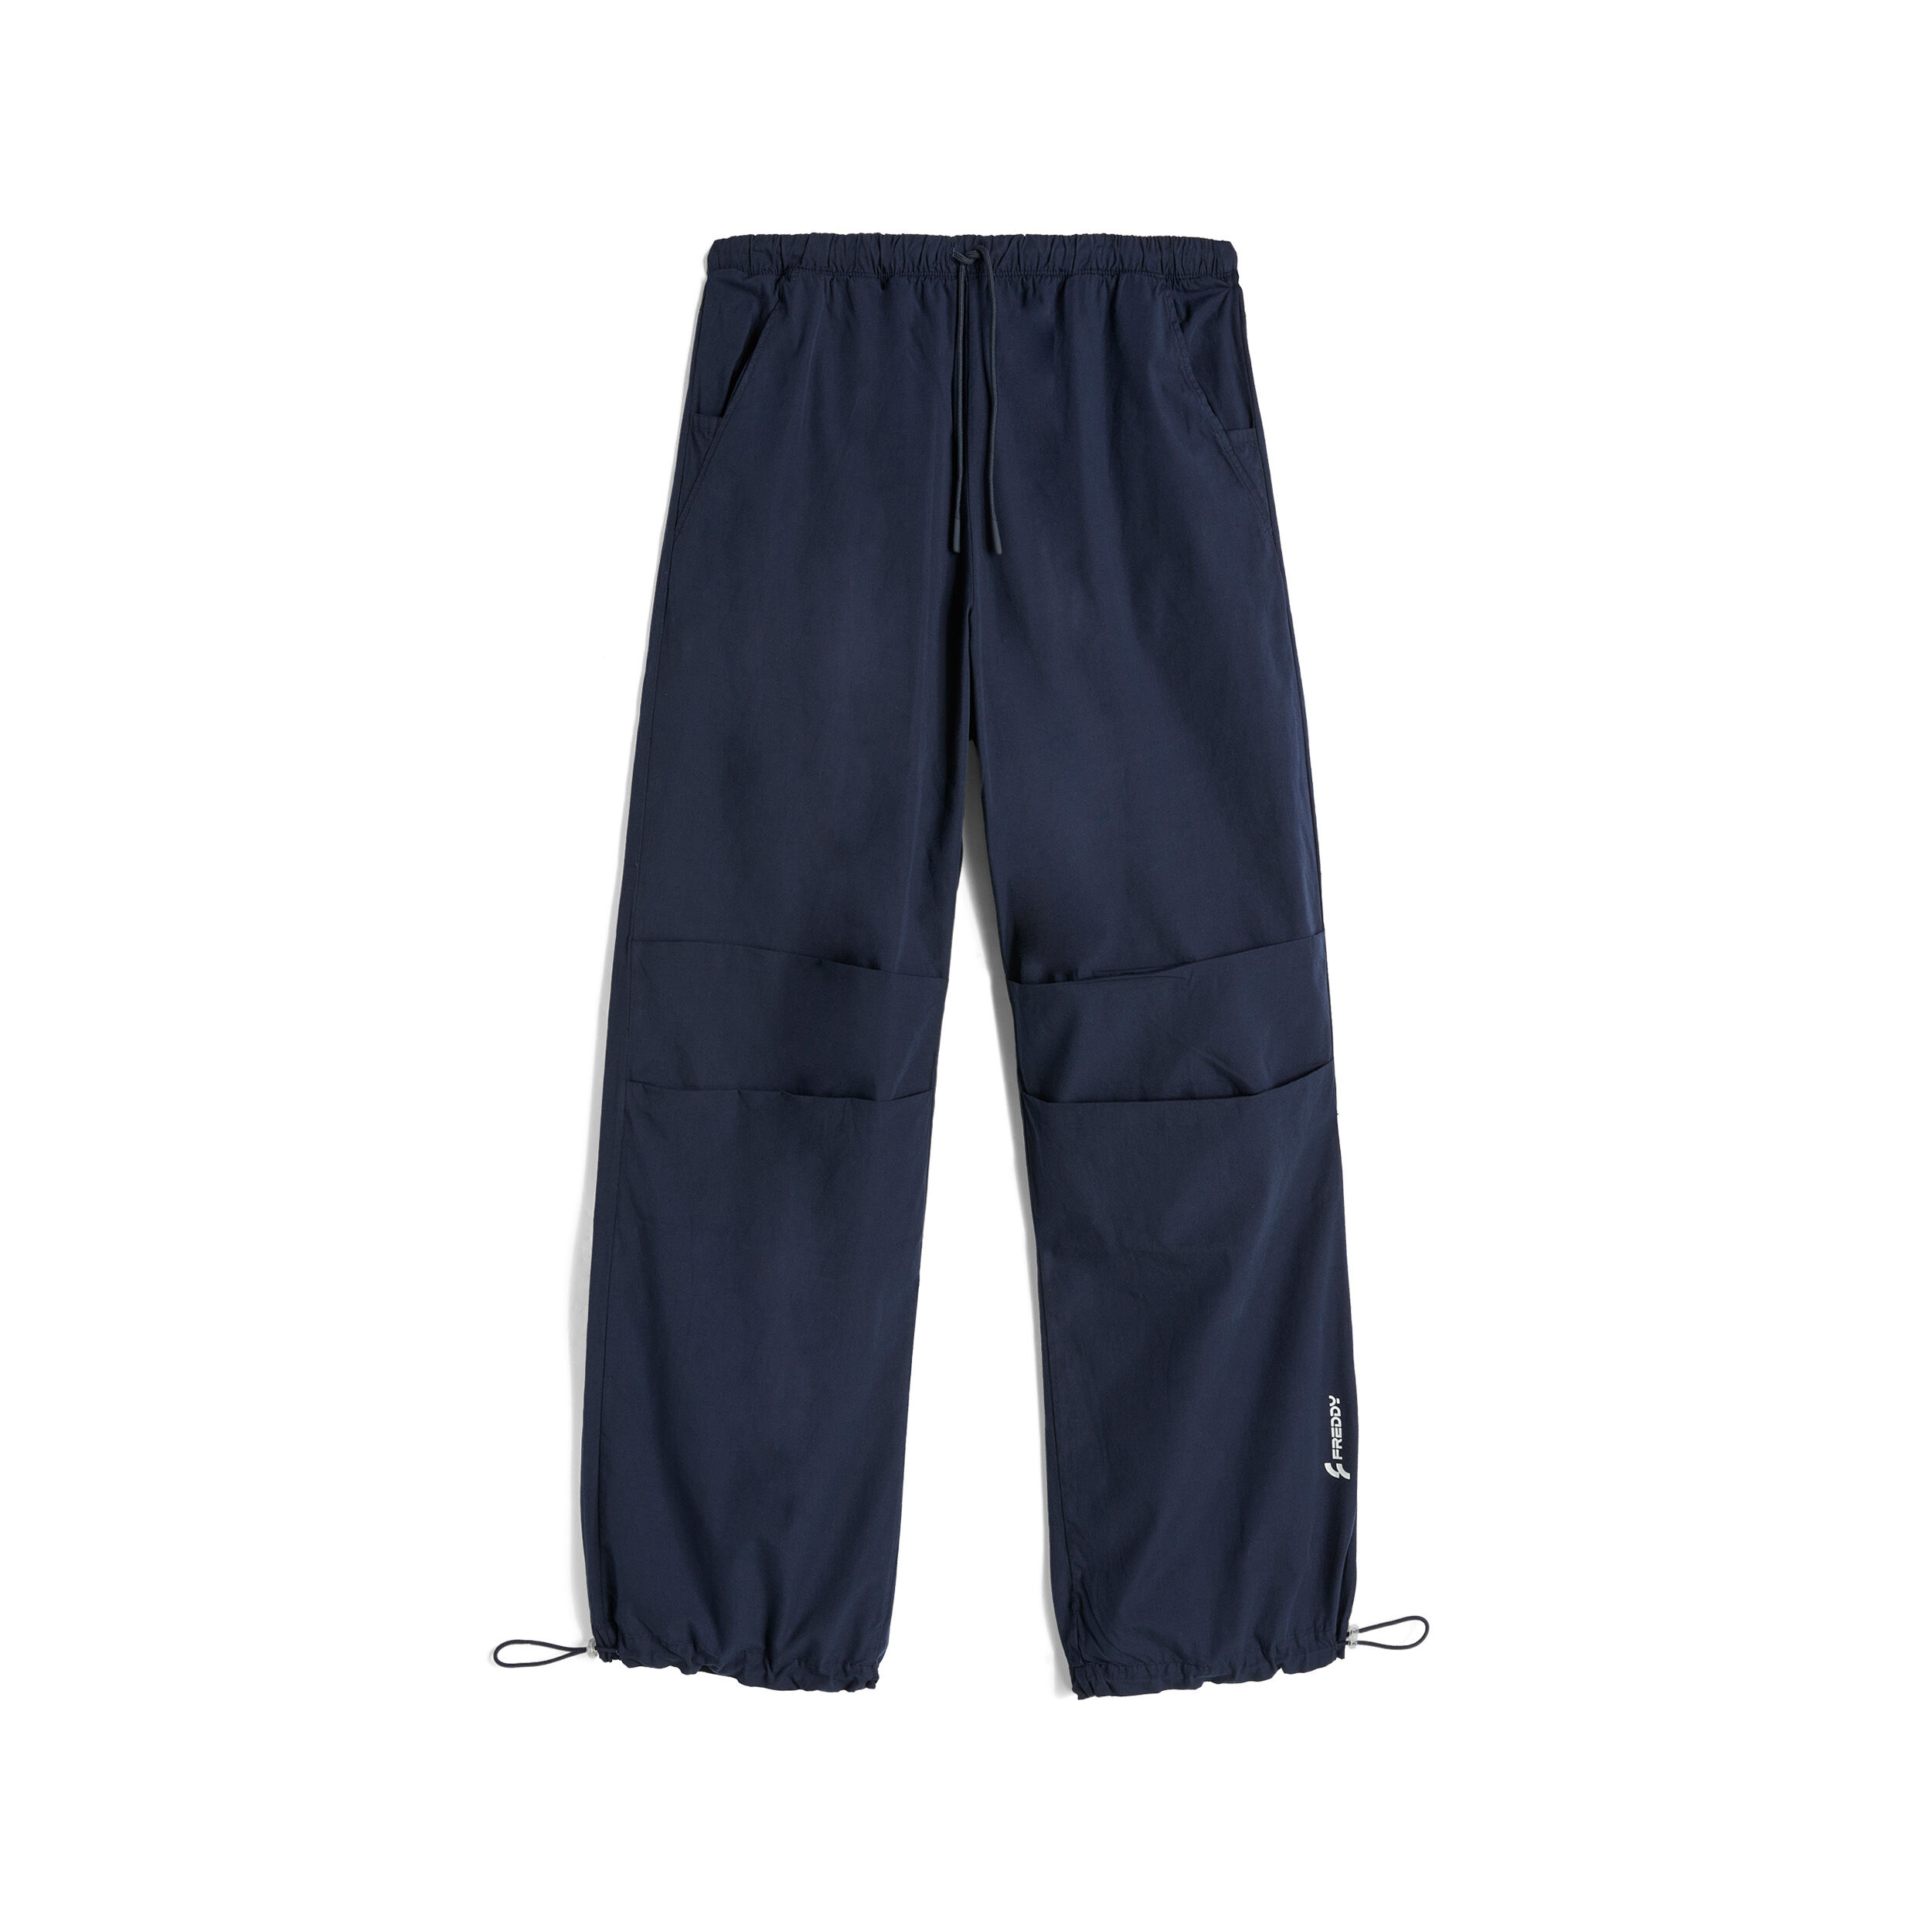 Freddy Pantaloni stile parachute pants in popeline Blu Navy Donna Extra Large